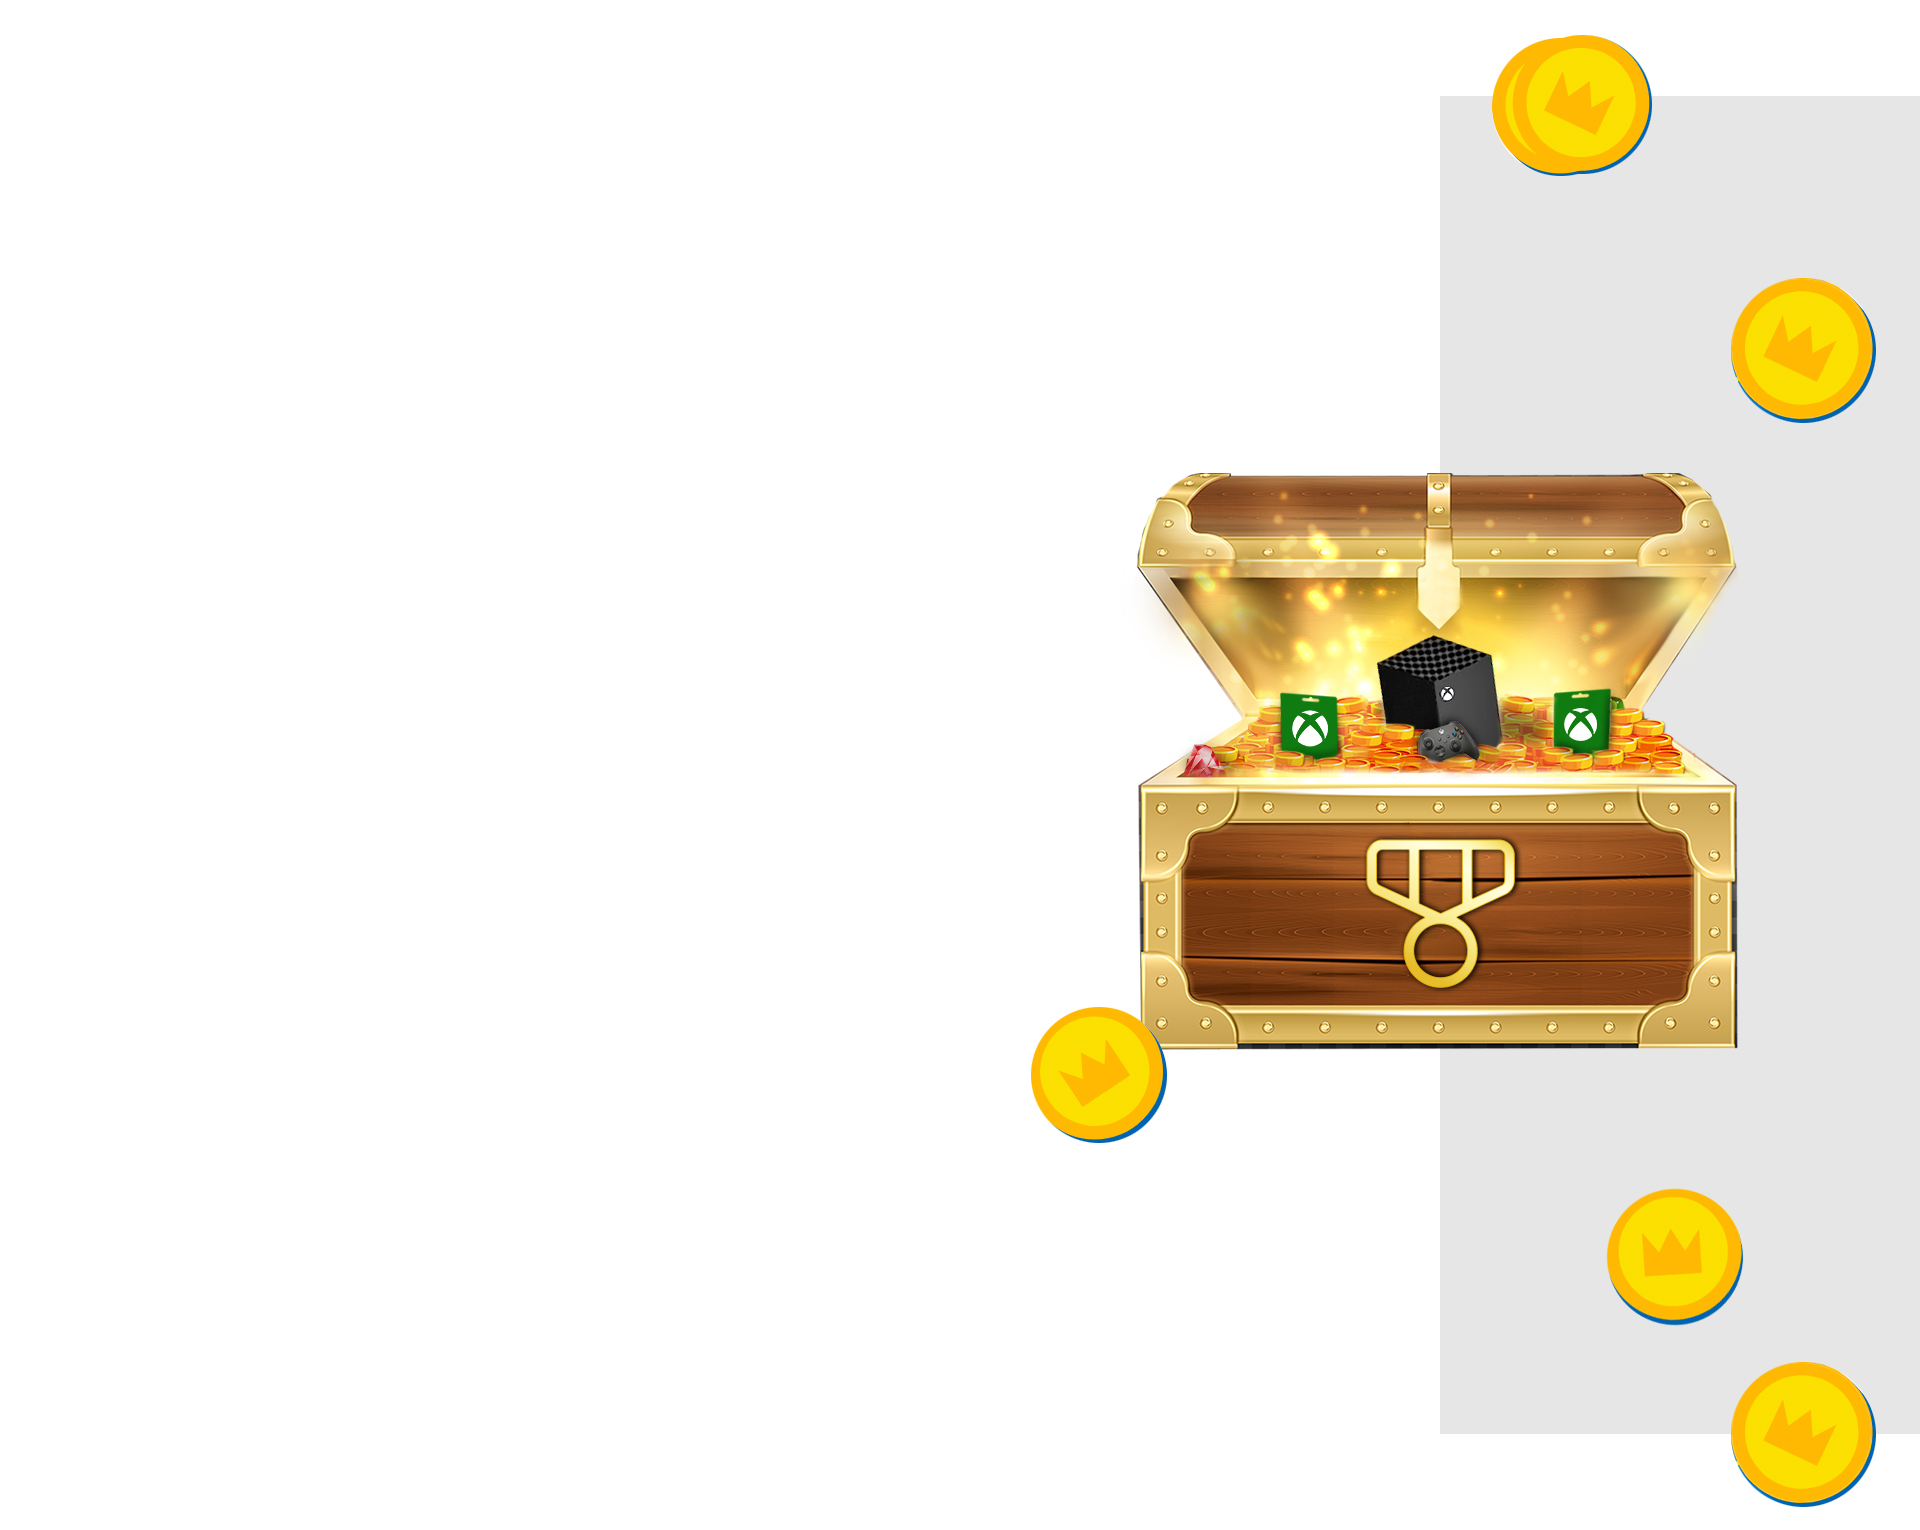 Un coffre au trésor débordant de pièces de monnaie, de cartes cadeaux Xbox, d’une console Xbox Series X et d’une manette Xbox